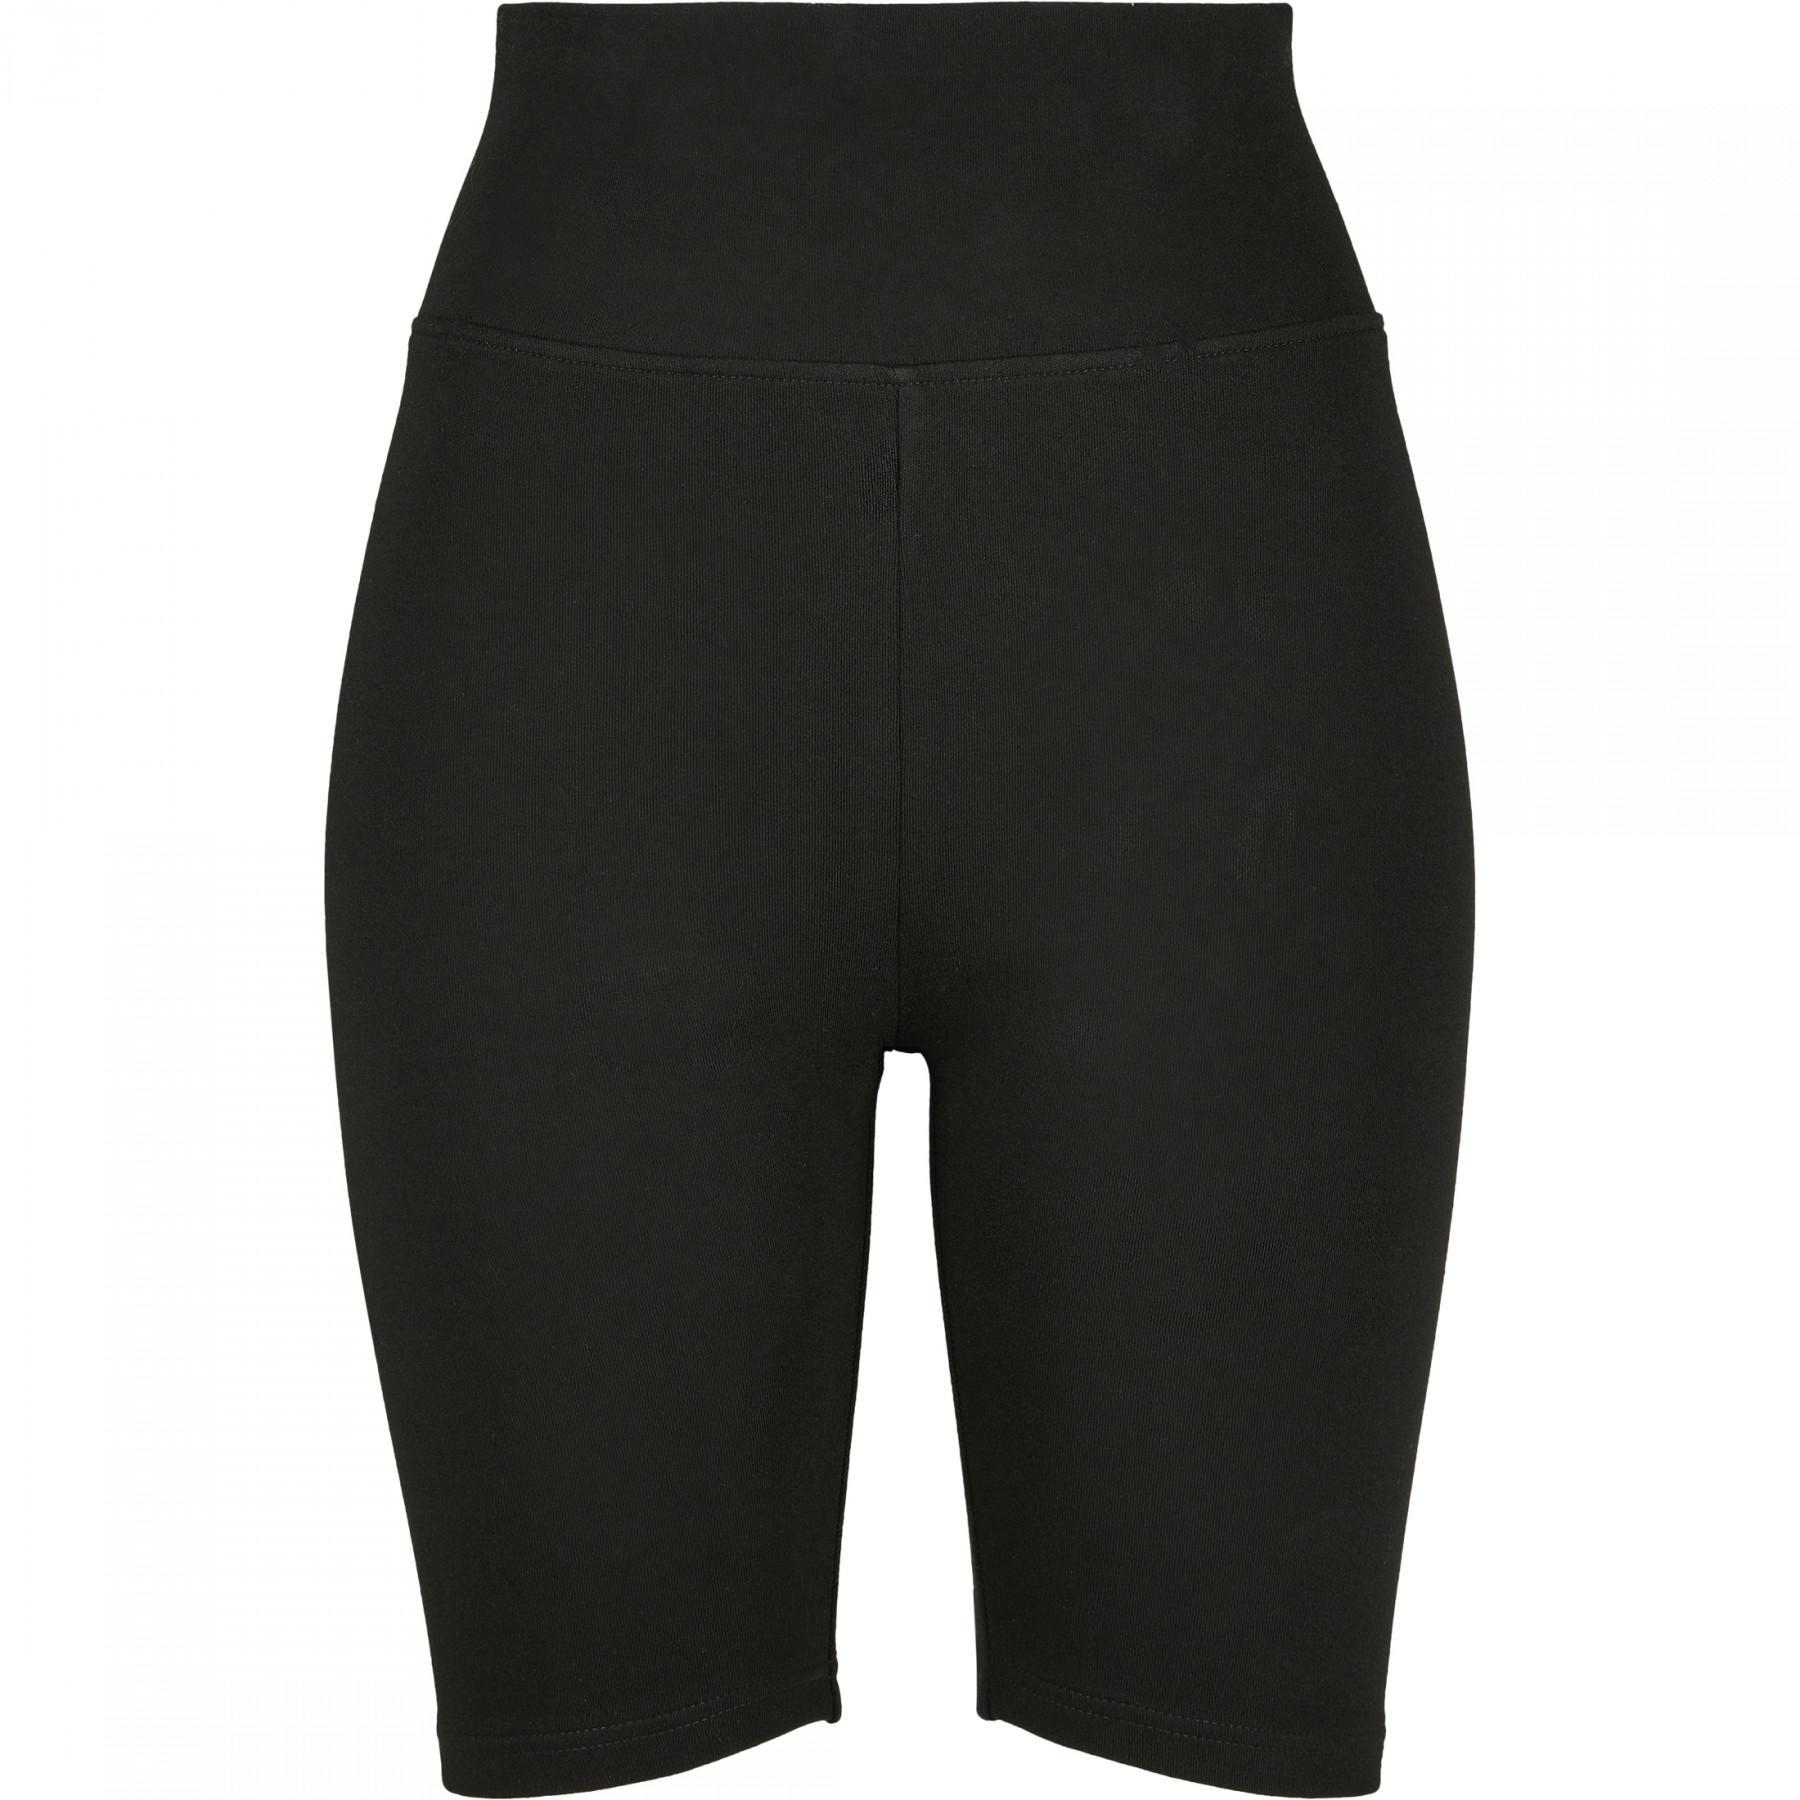 Women's Urban Classic waist GT shorts